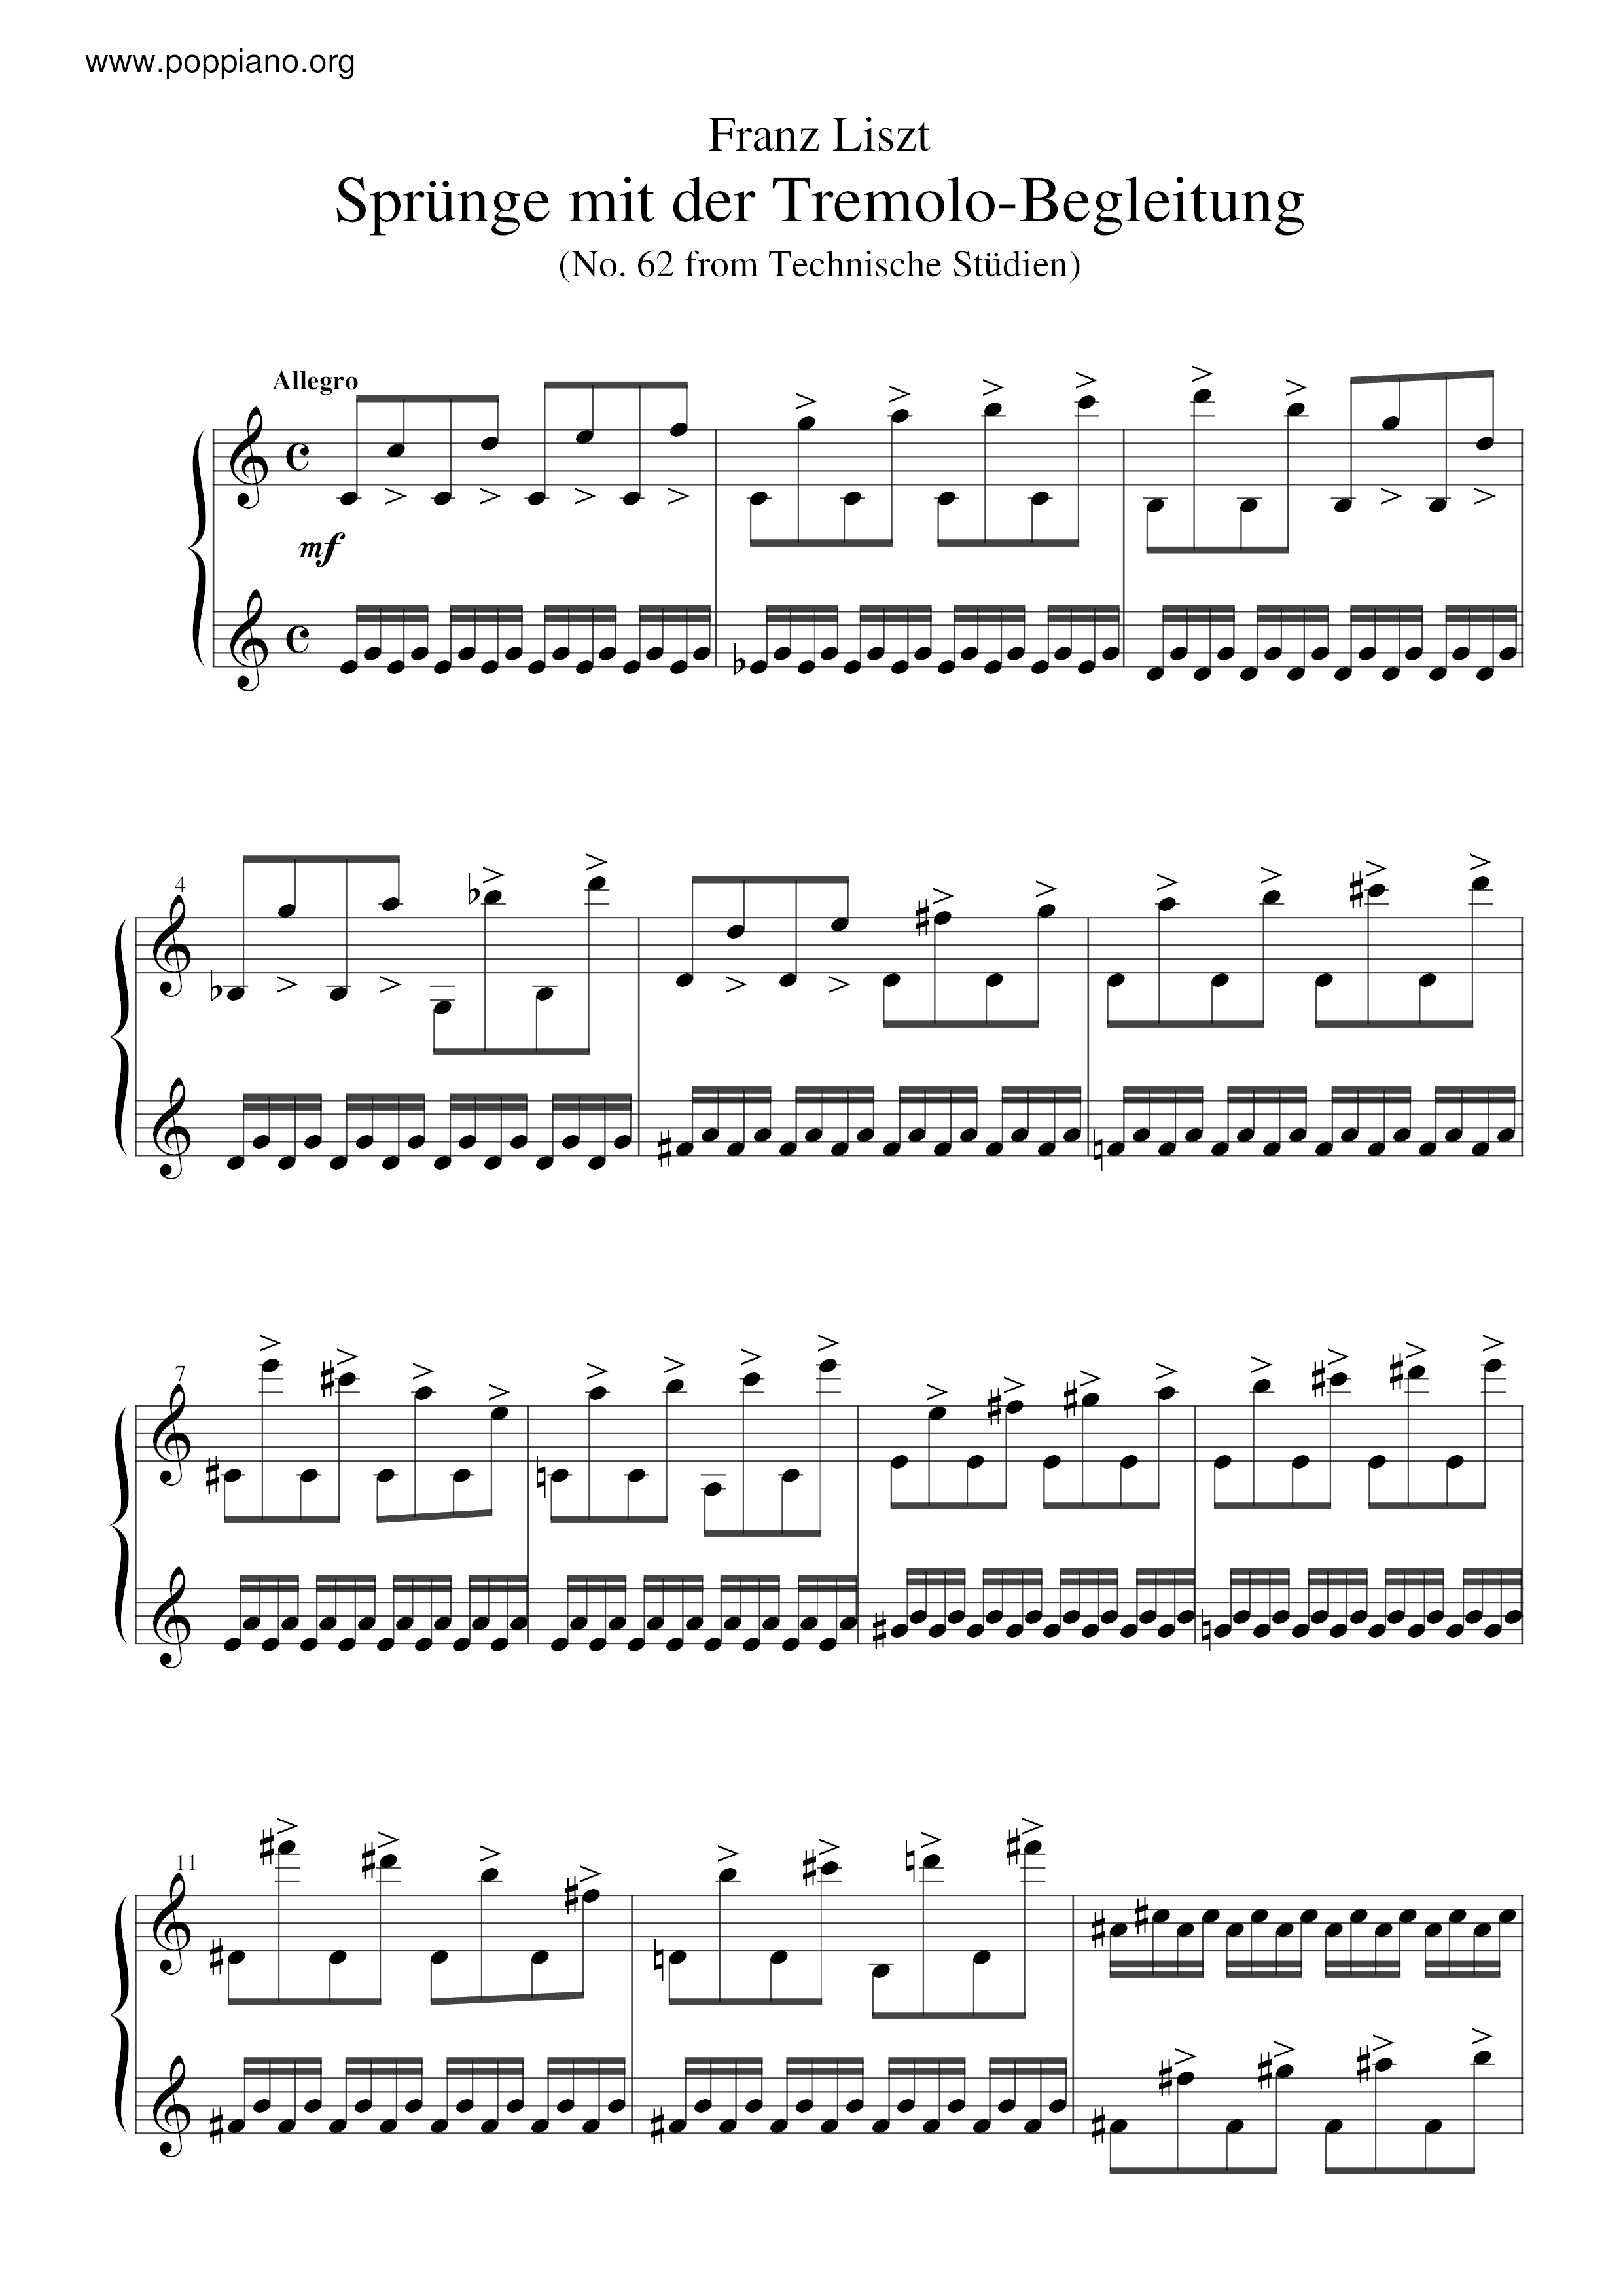 Sprunge mit der Tremolo-Begleitung, S.146/62琴譜